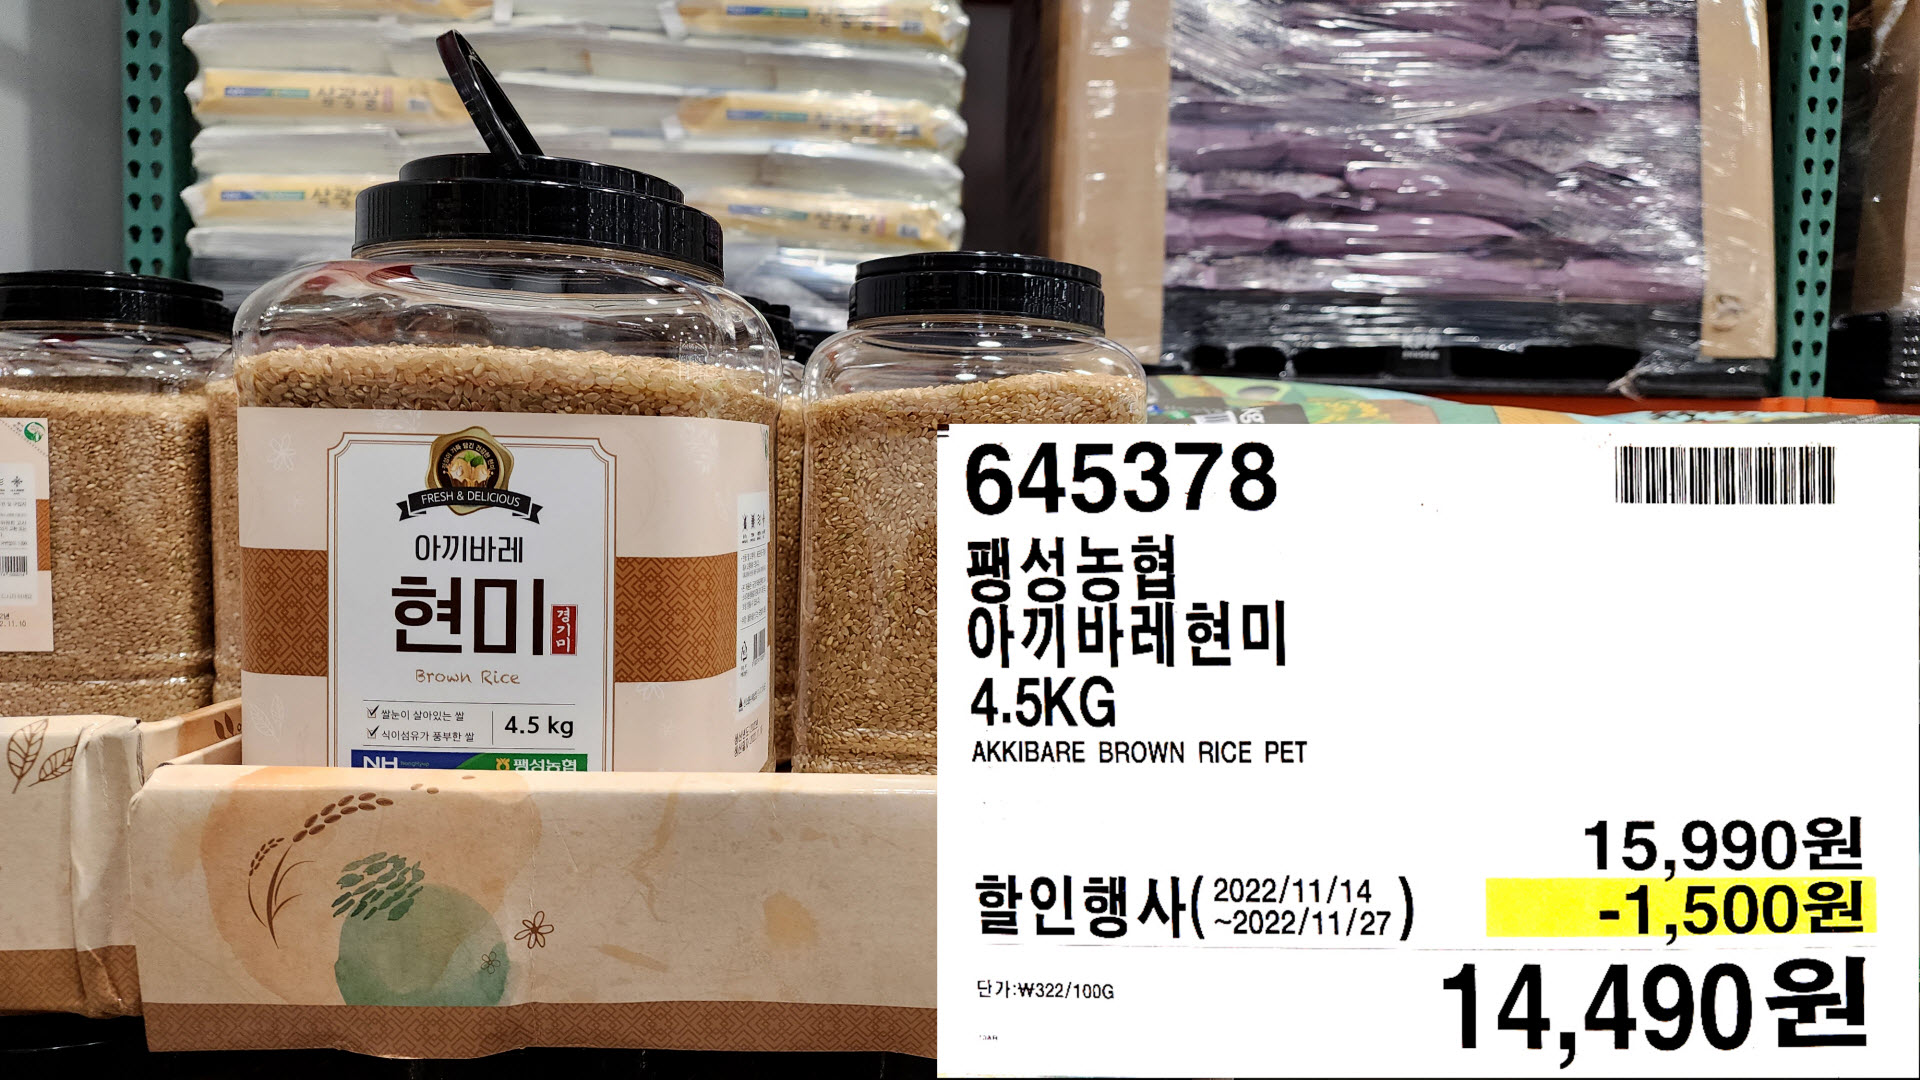 팽성농협
아끼바레현미
4.5KG
AKKIBARE BROWN RICE PET
14&#44;490원